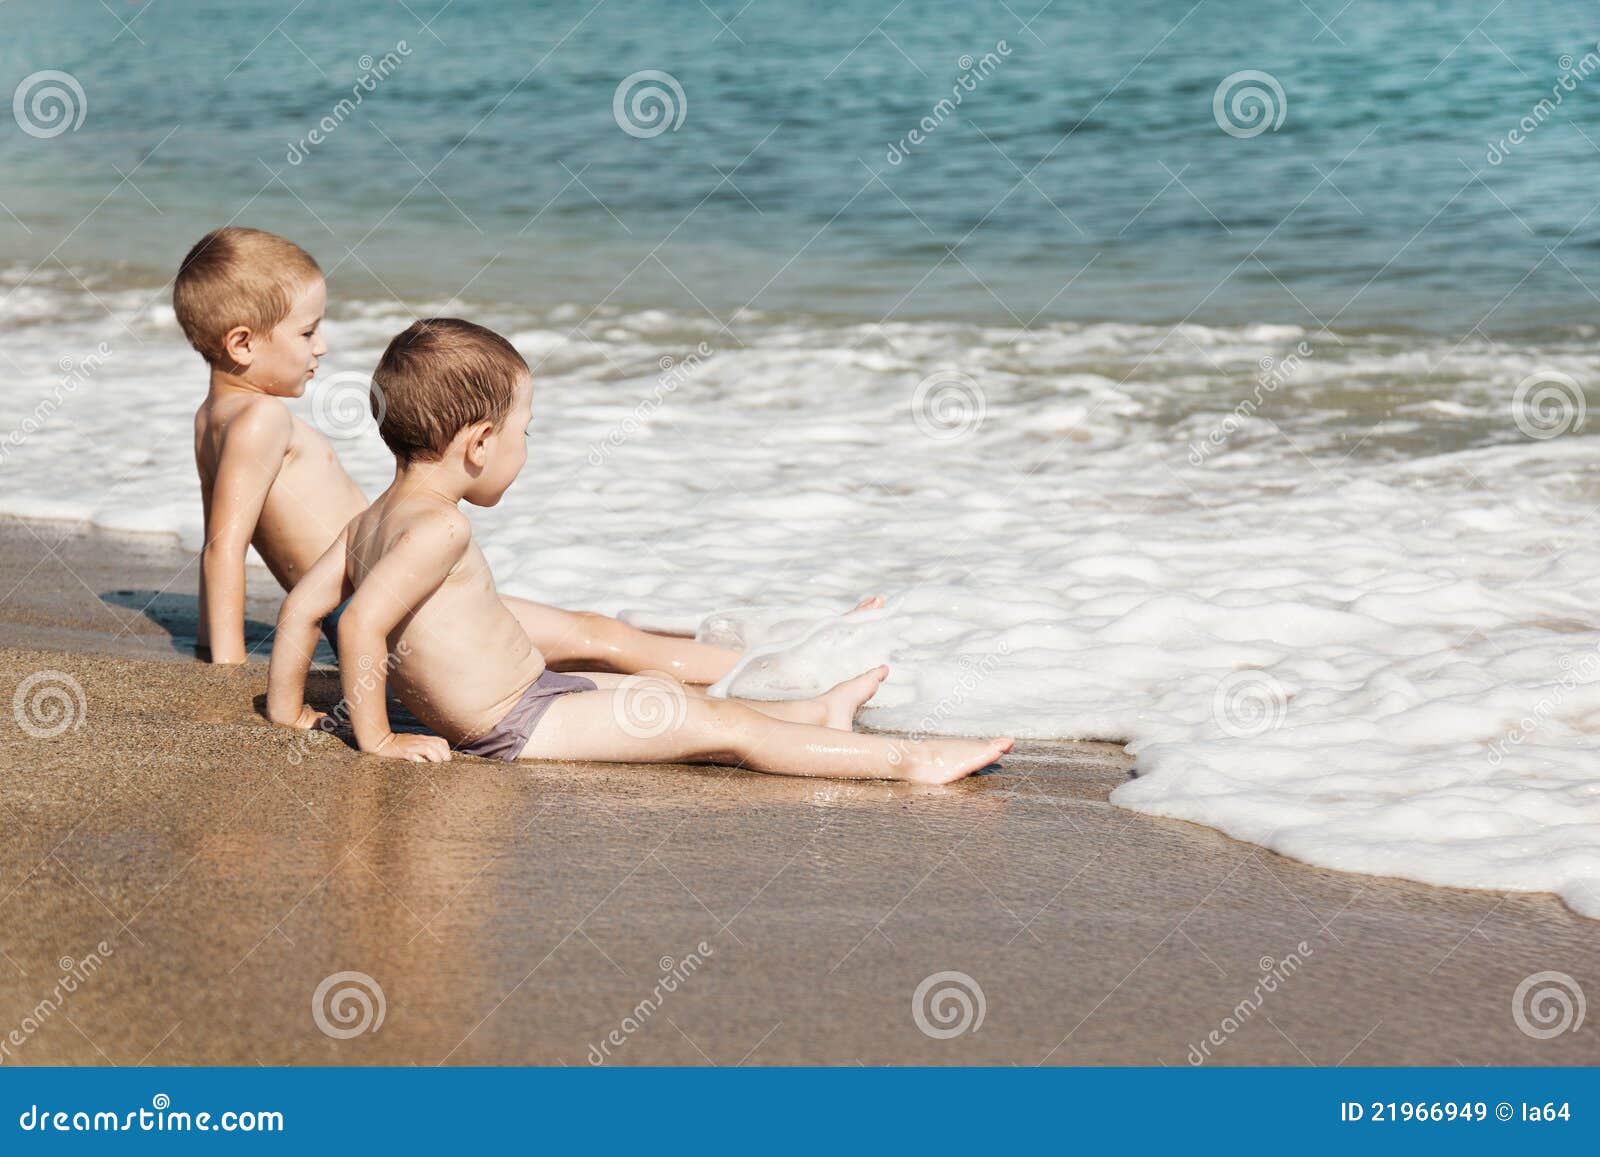 пляж с голыми детьми фото 114